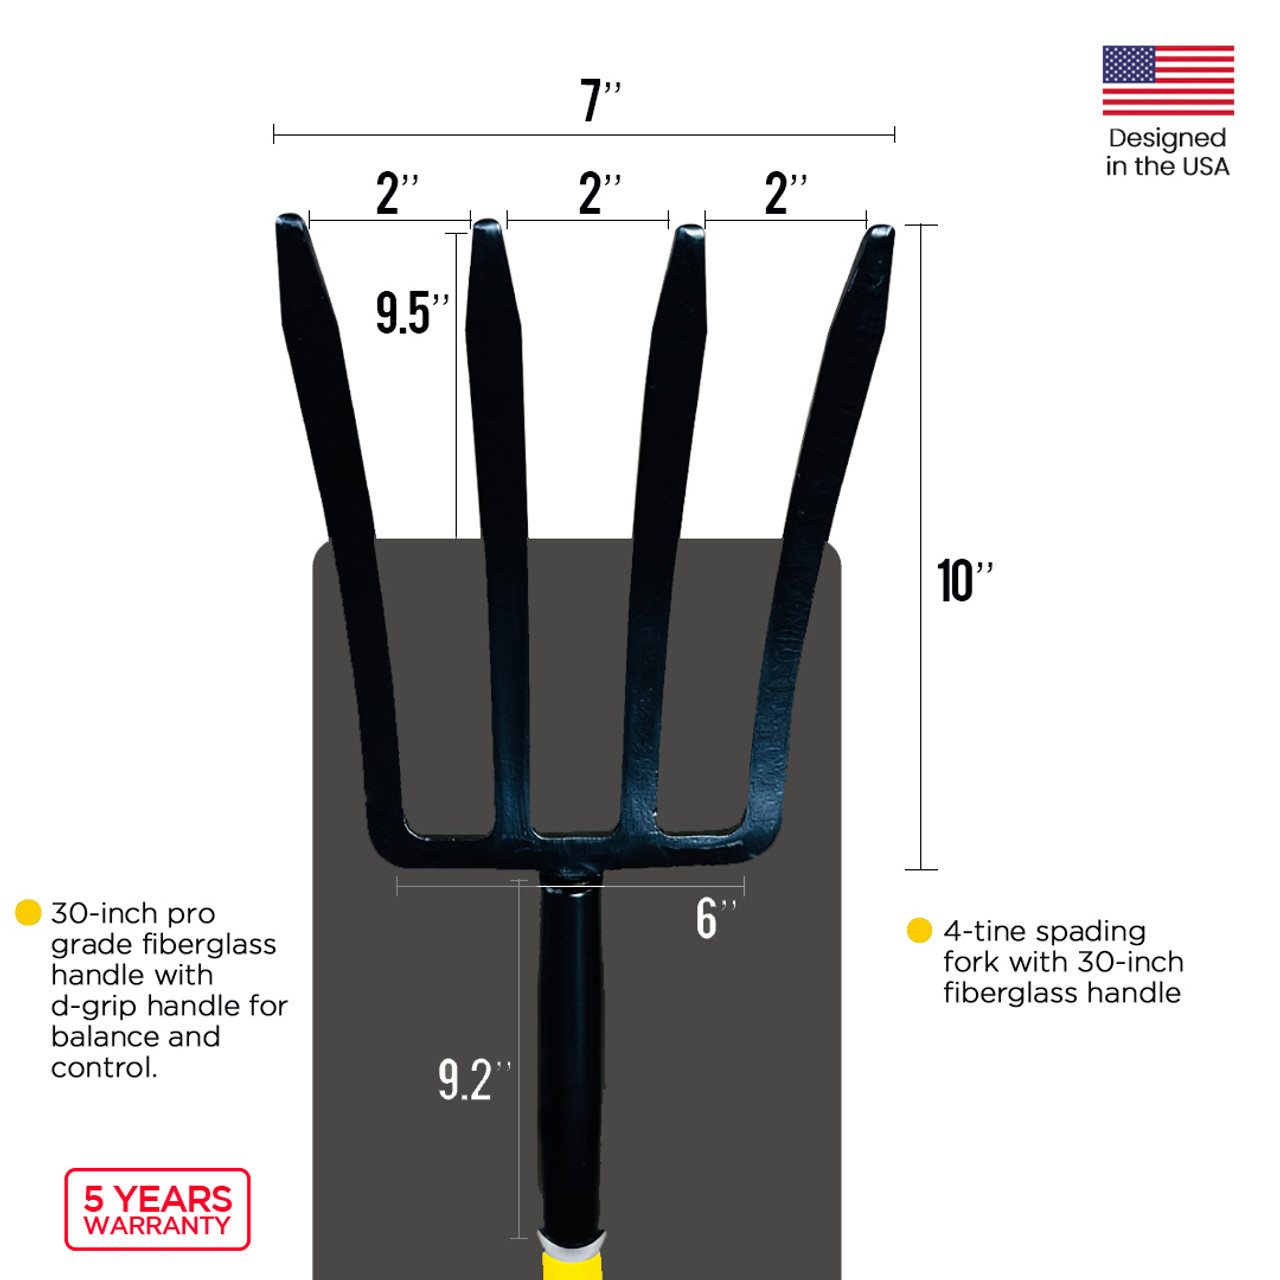 Spading fork, Pitchfork, Garden Fork, Digging Fork with Fiberglass D-Handle 30-Inch